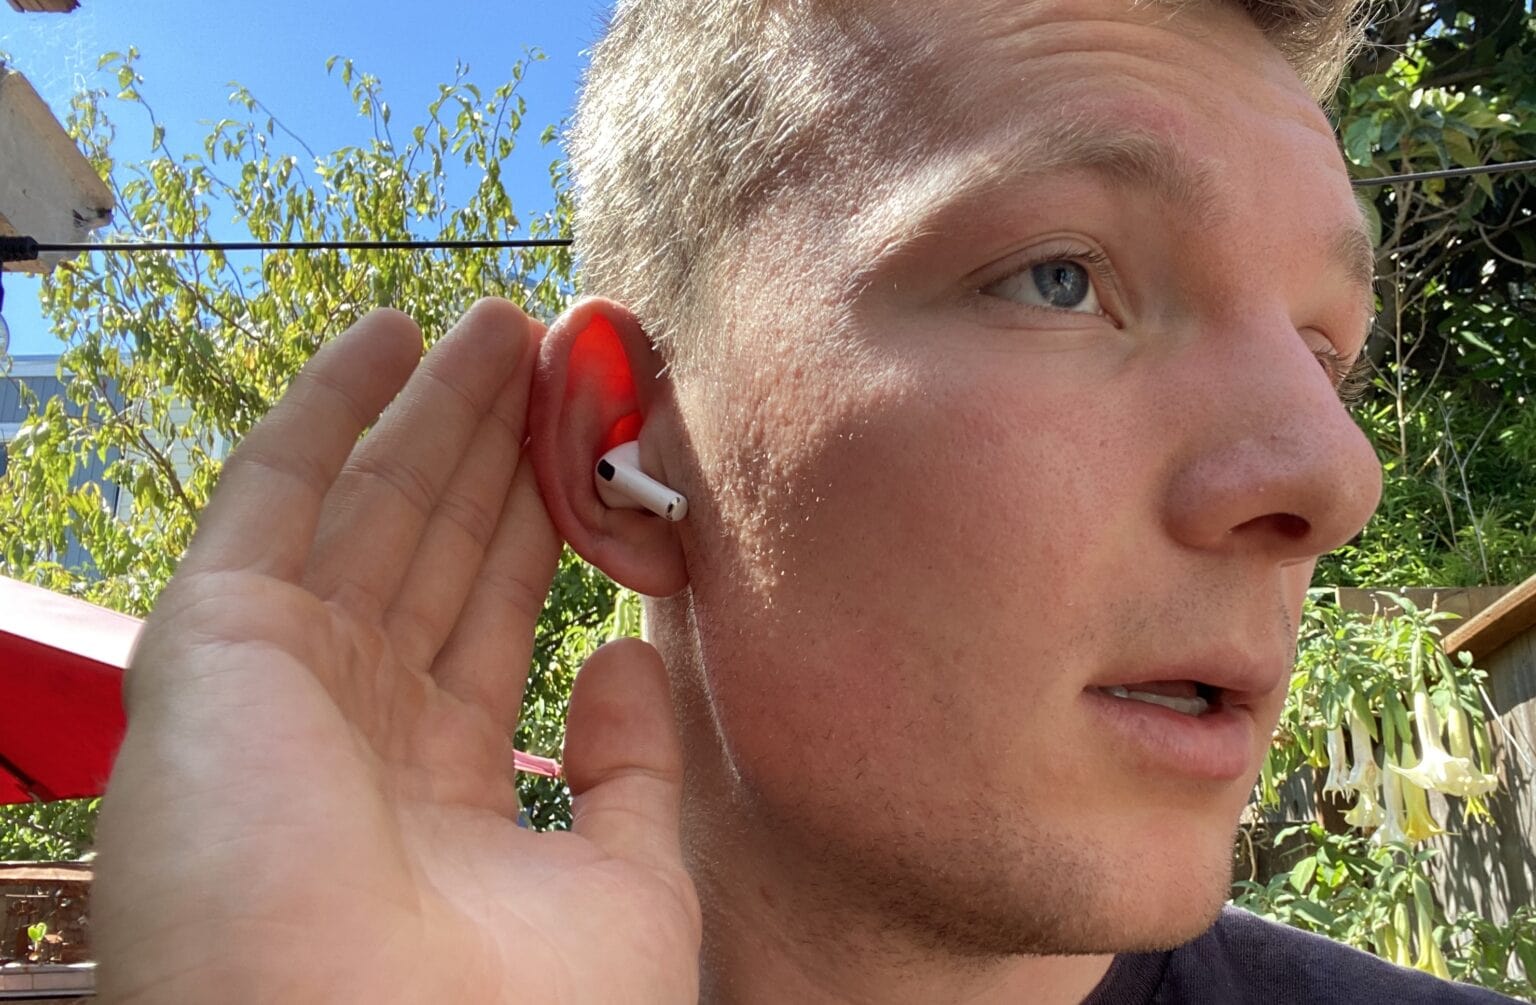 Depuis iPhoneIslam.com, un jeune homme insère des AirPods 4 rouges dans son oreille, avec un fond extérieur ensoleillé avec un feuillage vert.